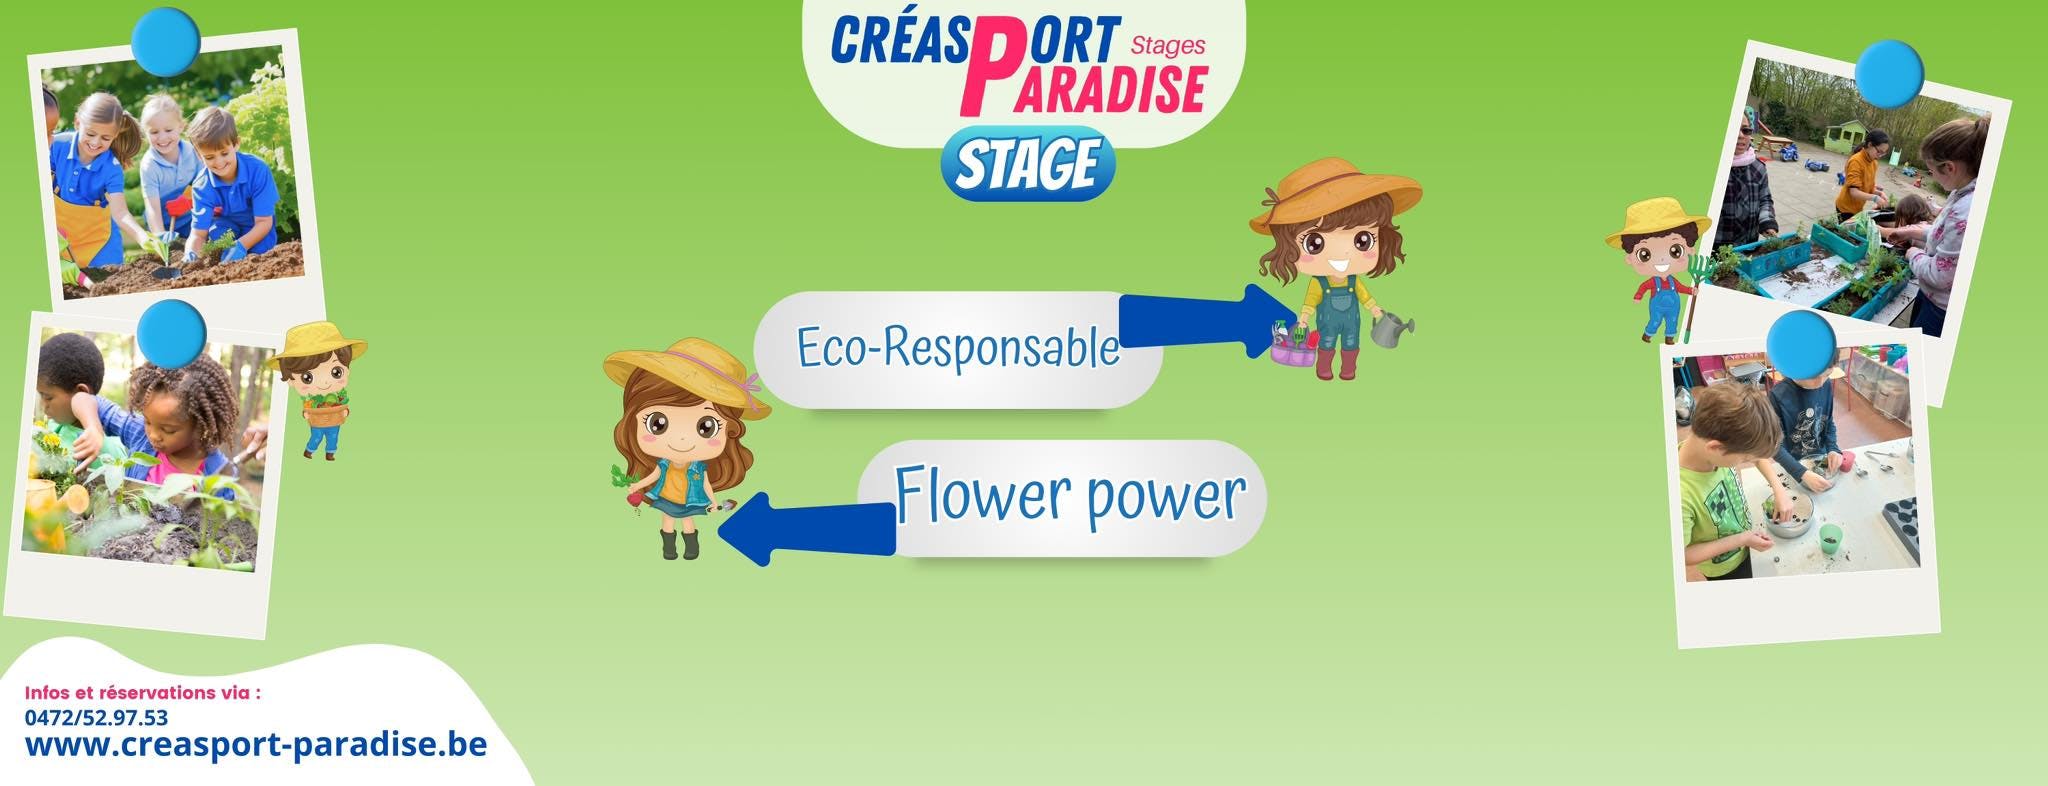 Eco-Responsable - Flower Power